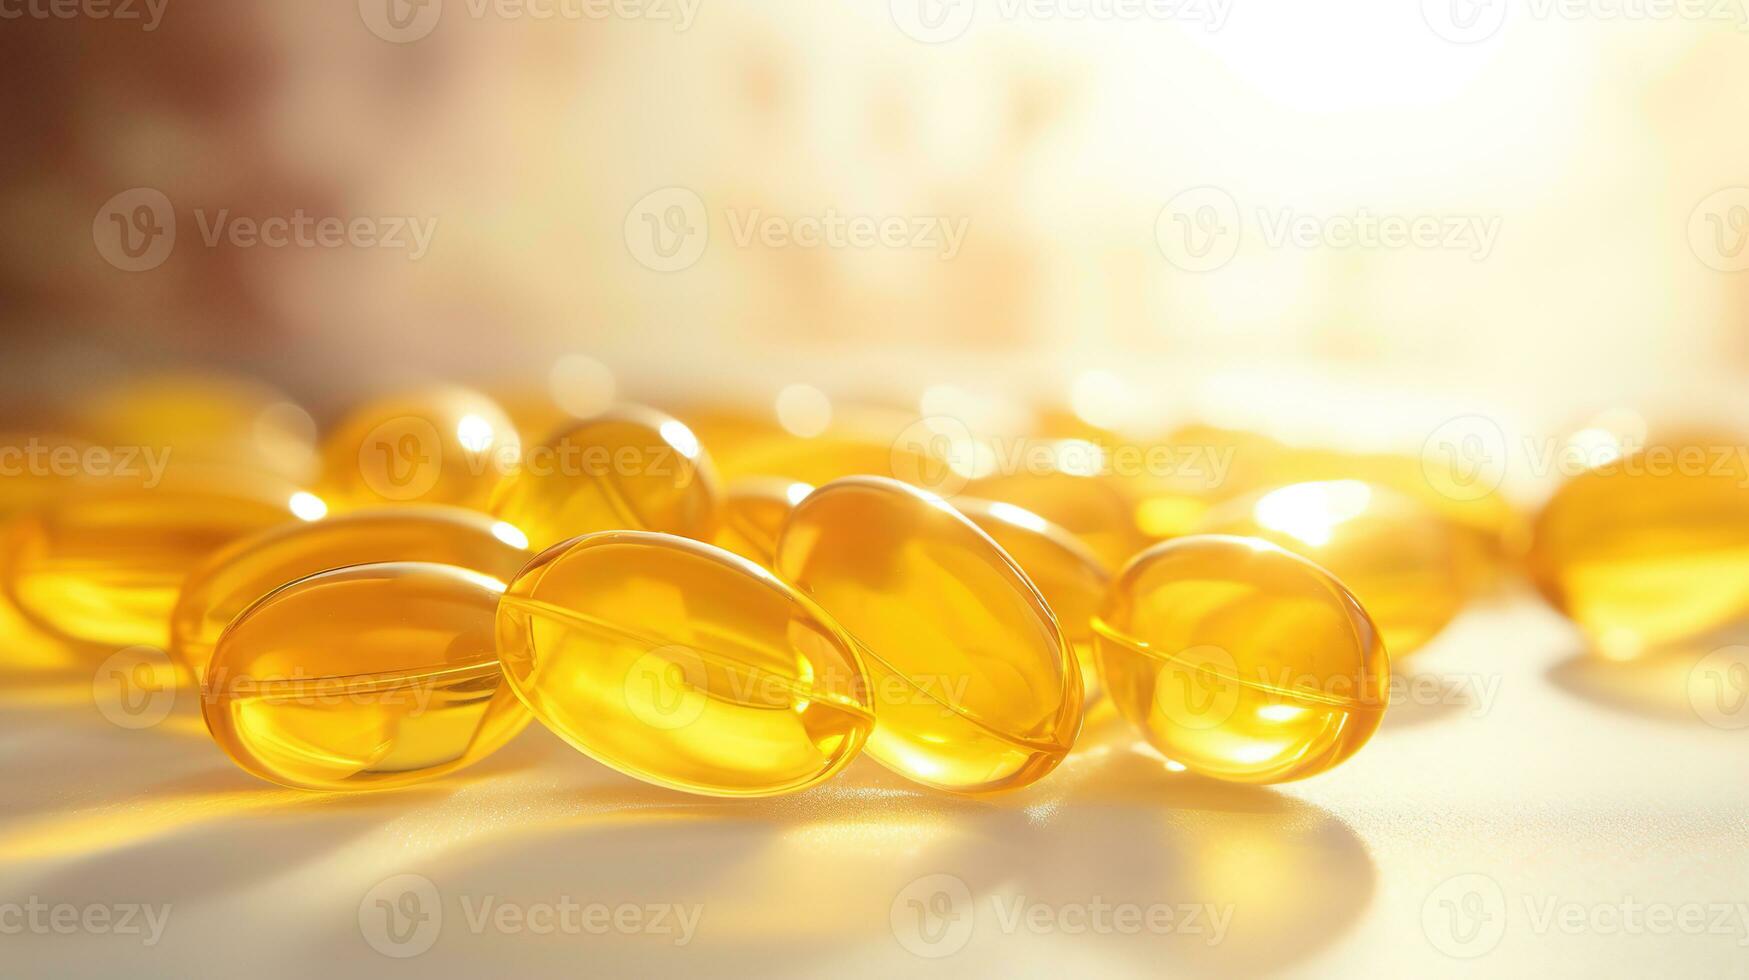 transparent gul vitaminer på en ljus bakgrund. vitamin d, omega 3, omega 6, mat tillägg olja fylld fisk olja, vitamin en, vitamin e, linfrö olja. foto